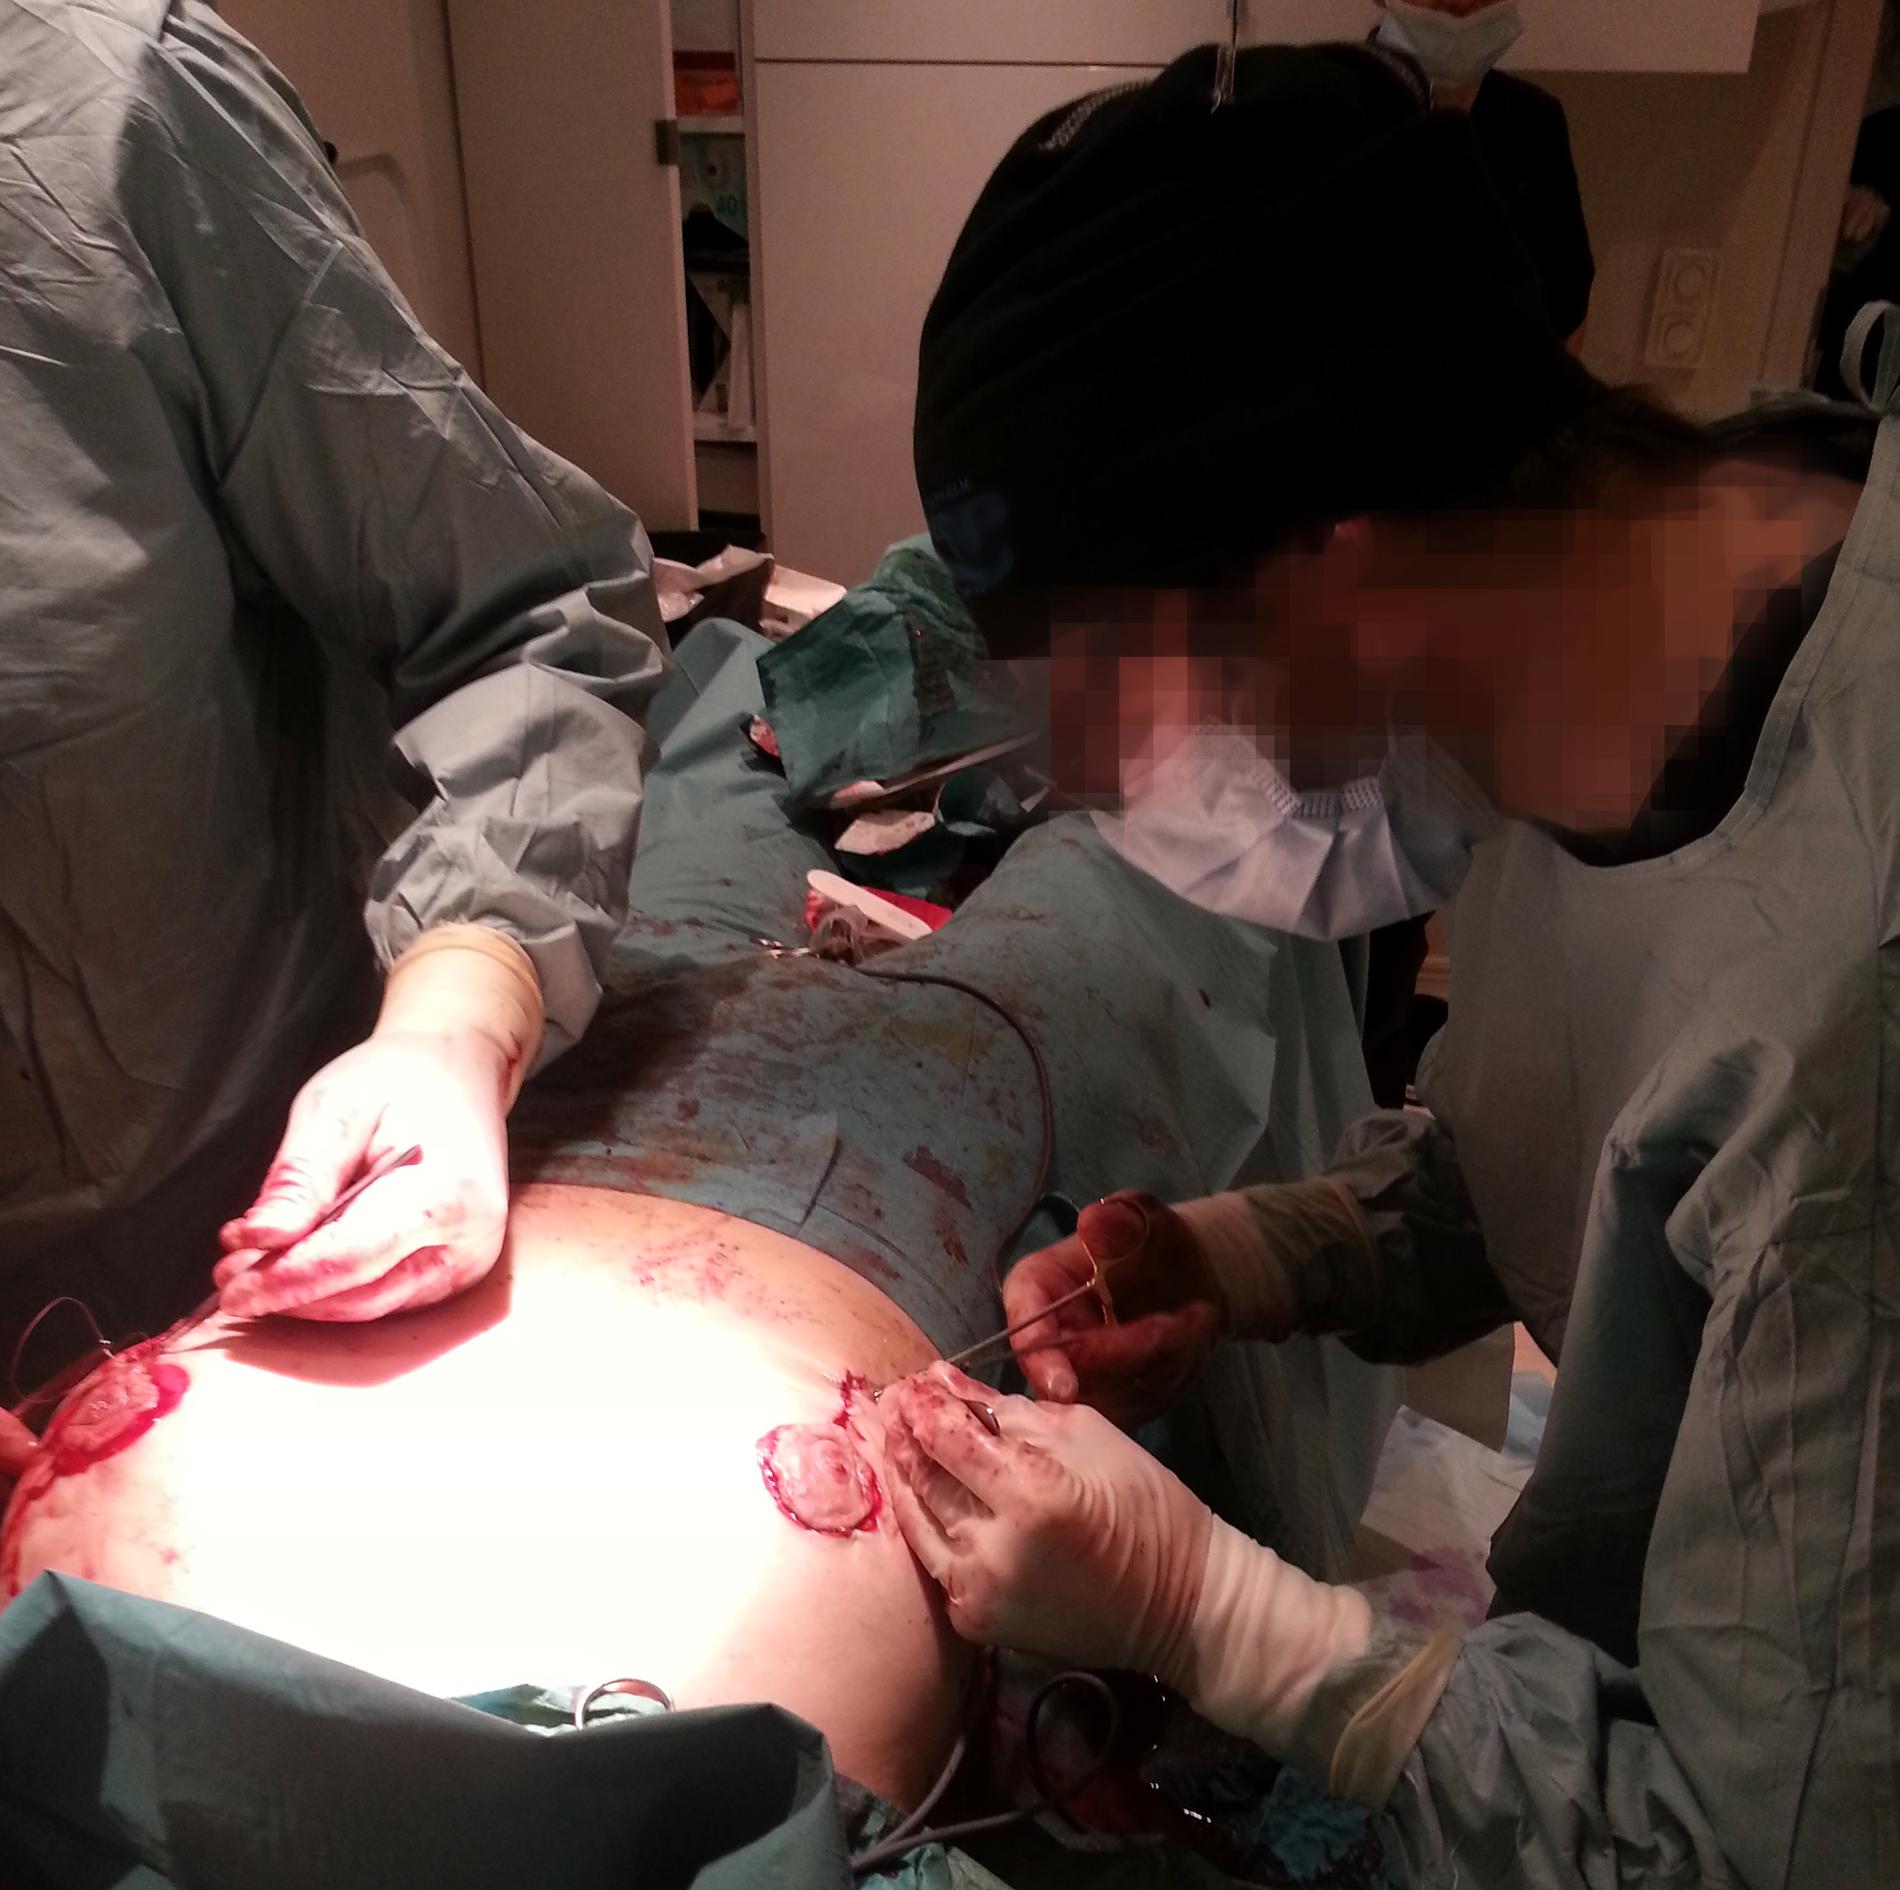 Här medverkar 38-åringen vid en bröstoperation. Enligt narkosläkaren som var med, så syr 38-åringen fast bröstvårtan på höger sida.
38-åringen själv förnekar att han ska ha opererat: ”Det här är förtal”.